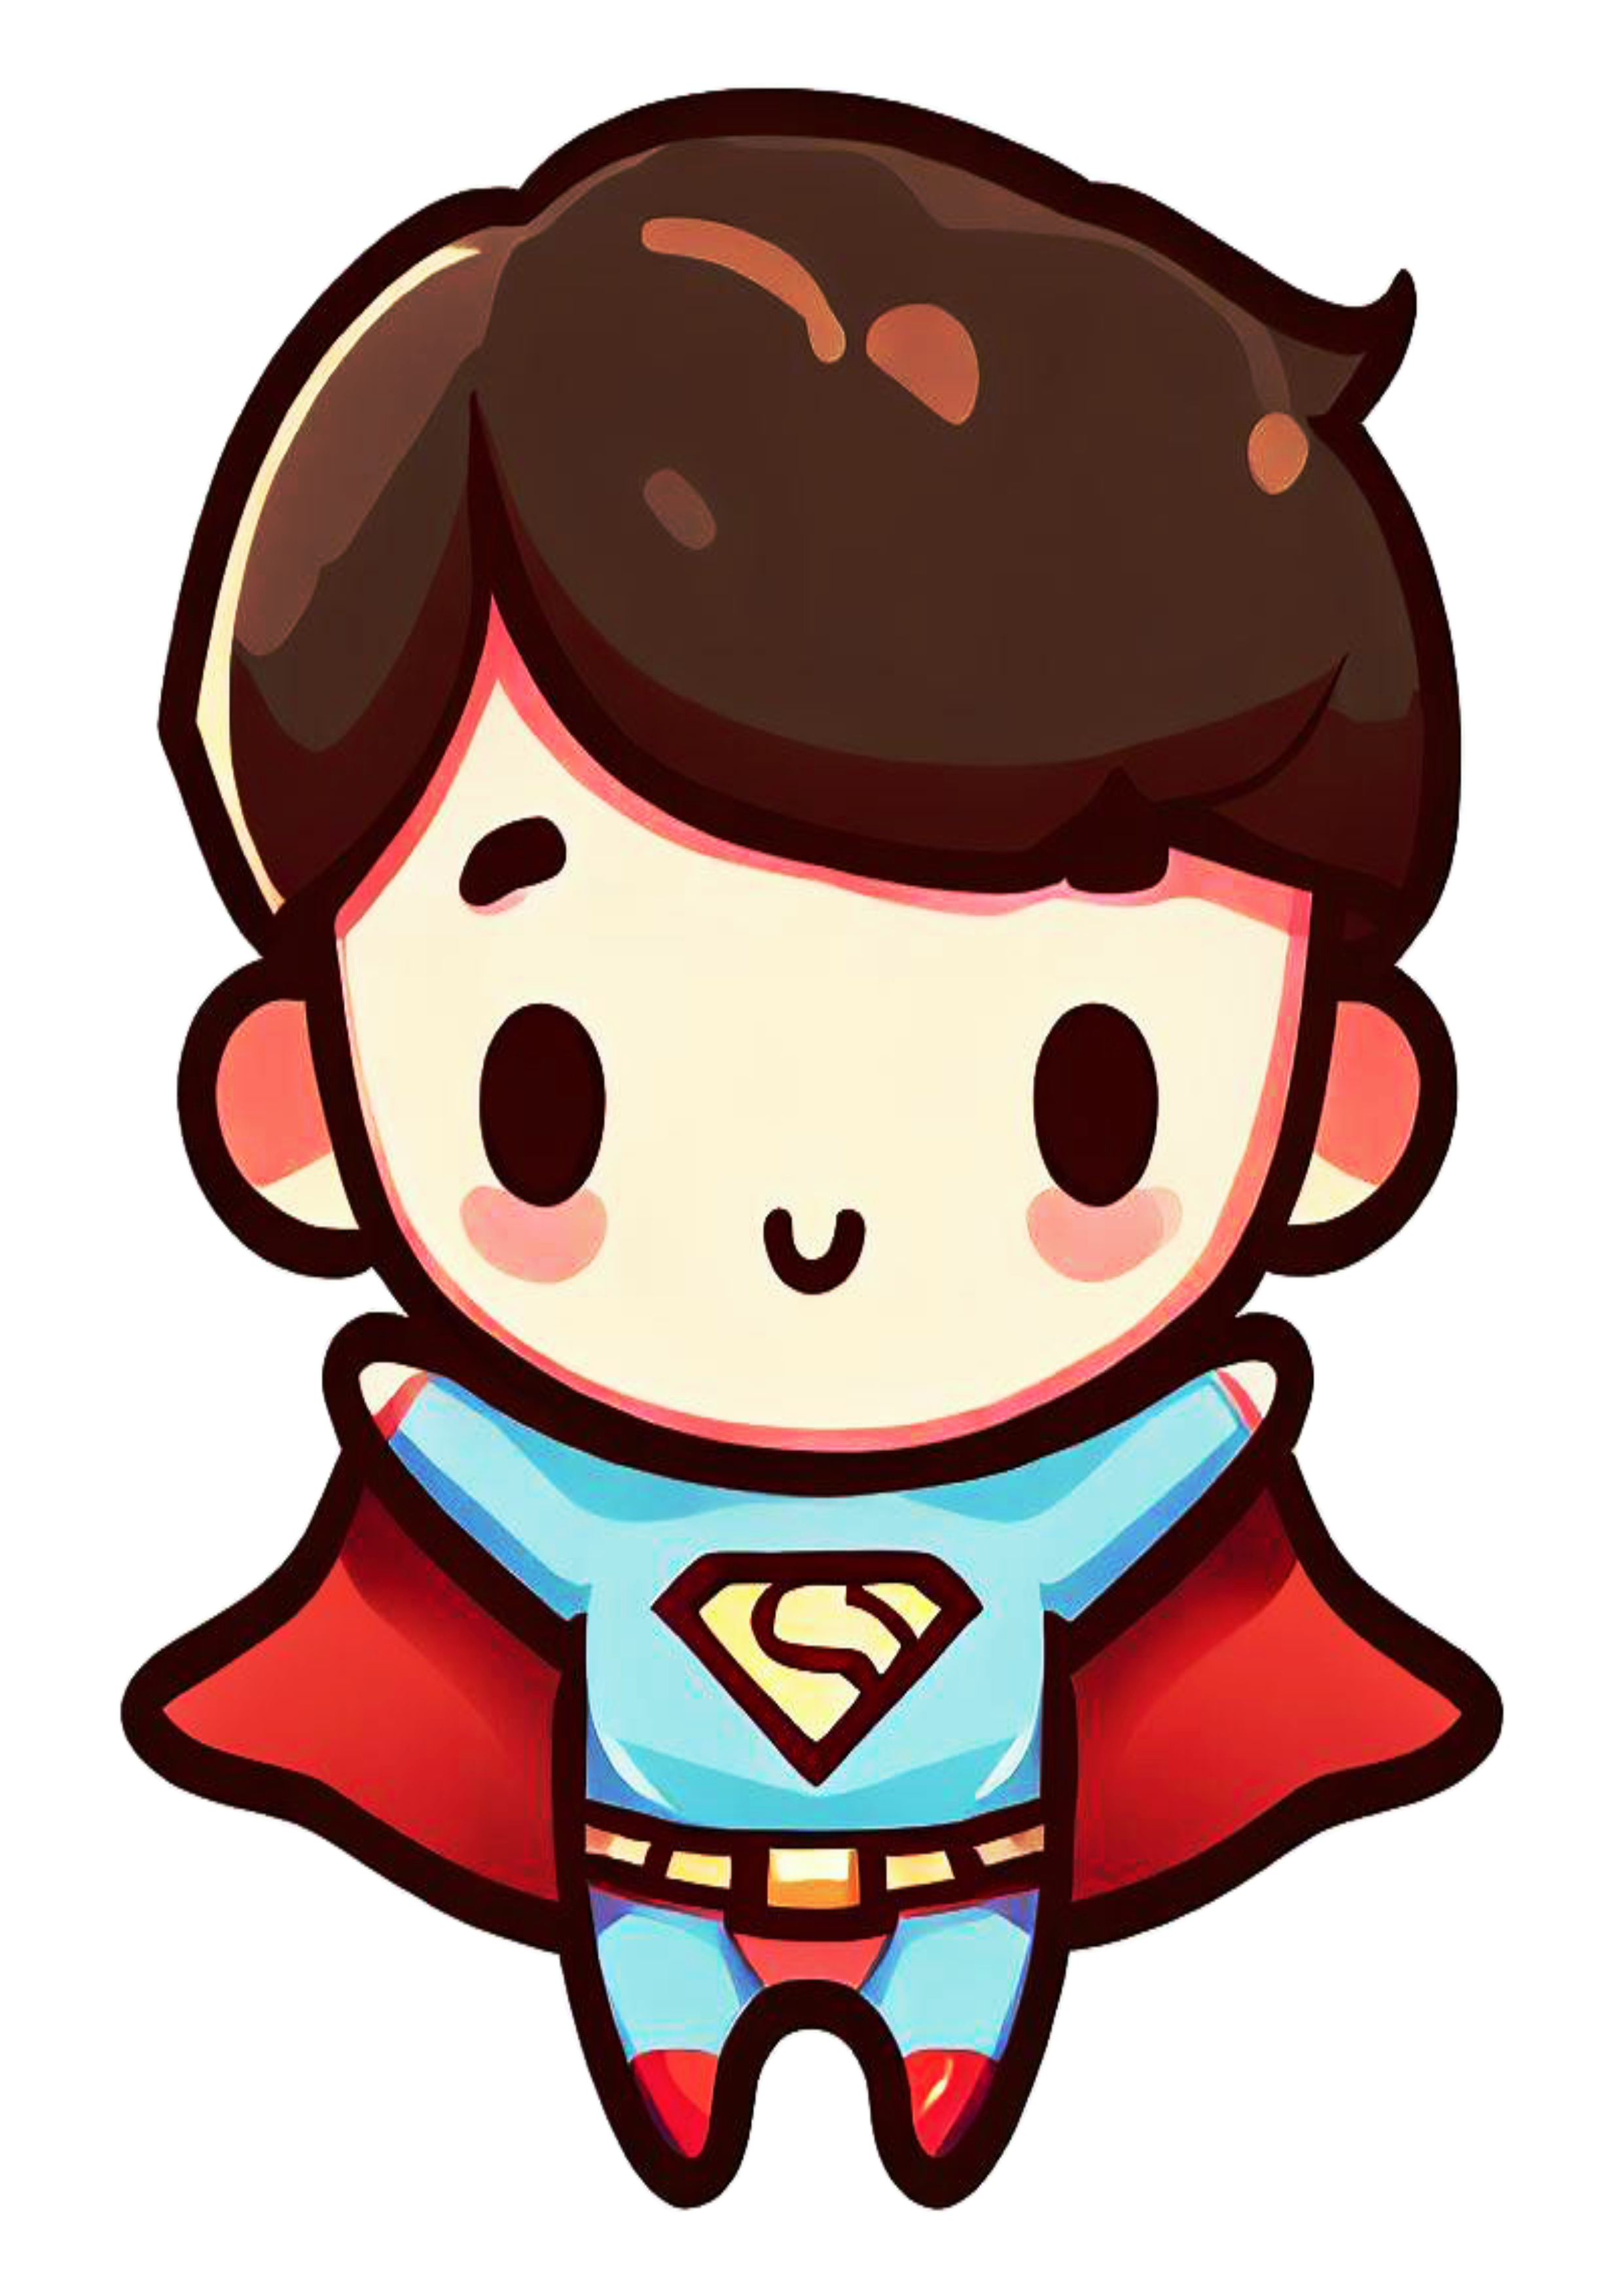 Super homem baby fofinho cute superman heroi fantasia infantil bonitinho ilustração desenho animado pack de imagens png